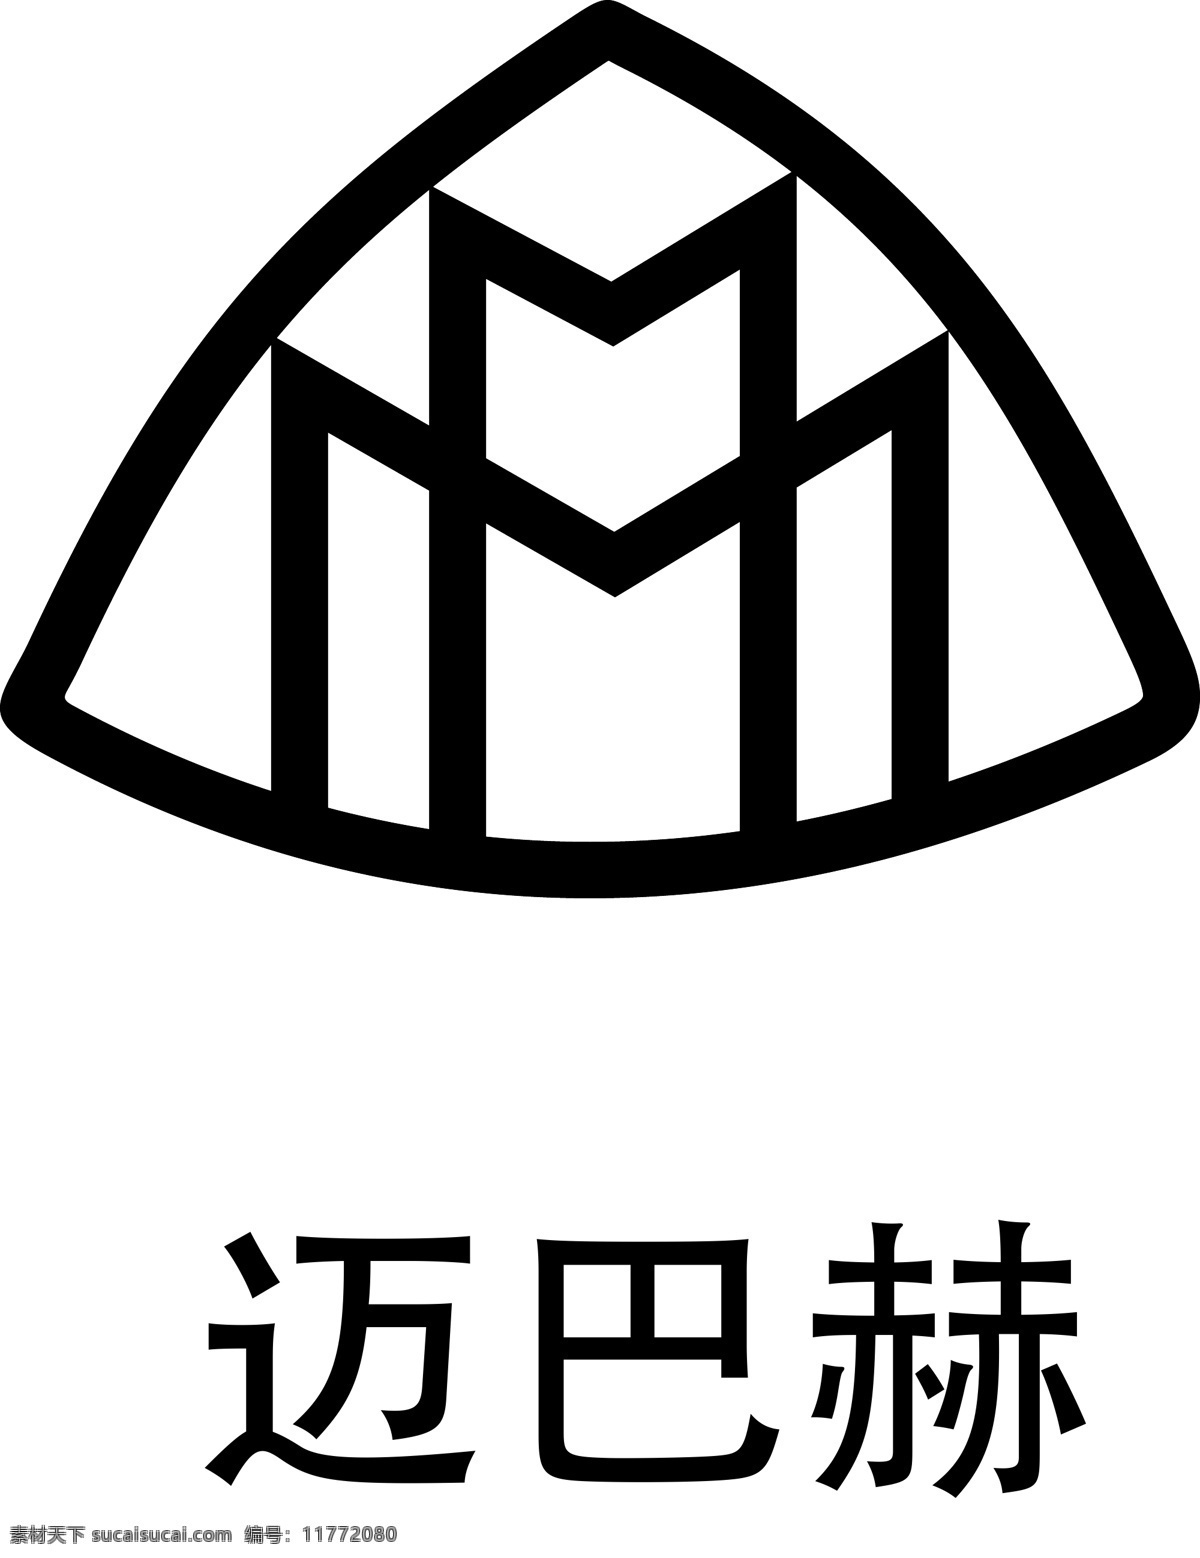 迈巴赫车标 迈 巴赫 logo 迈巴赫标志 迈巴赫商标 迈巴赫标识 迈巴赫图标